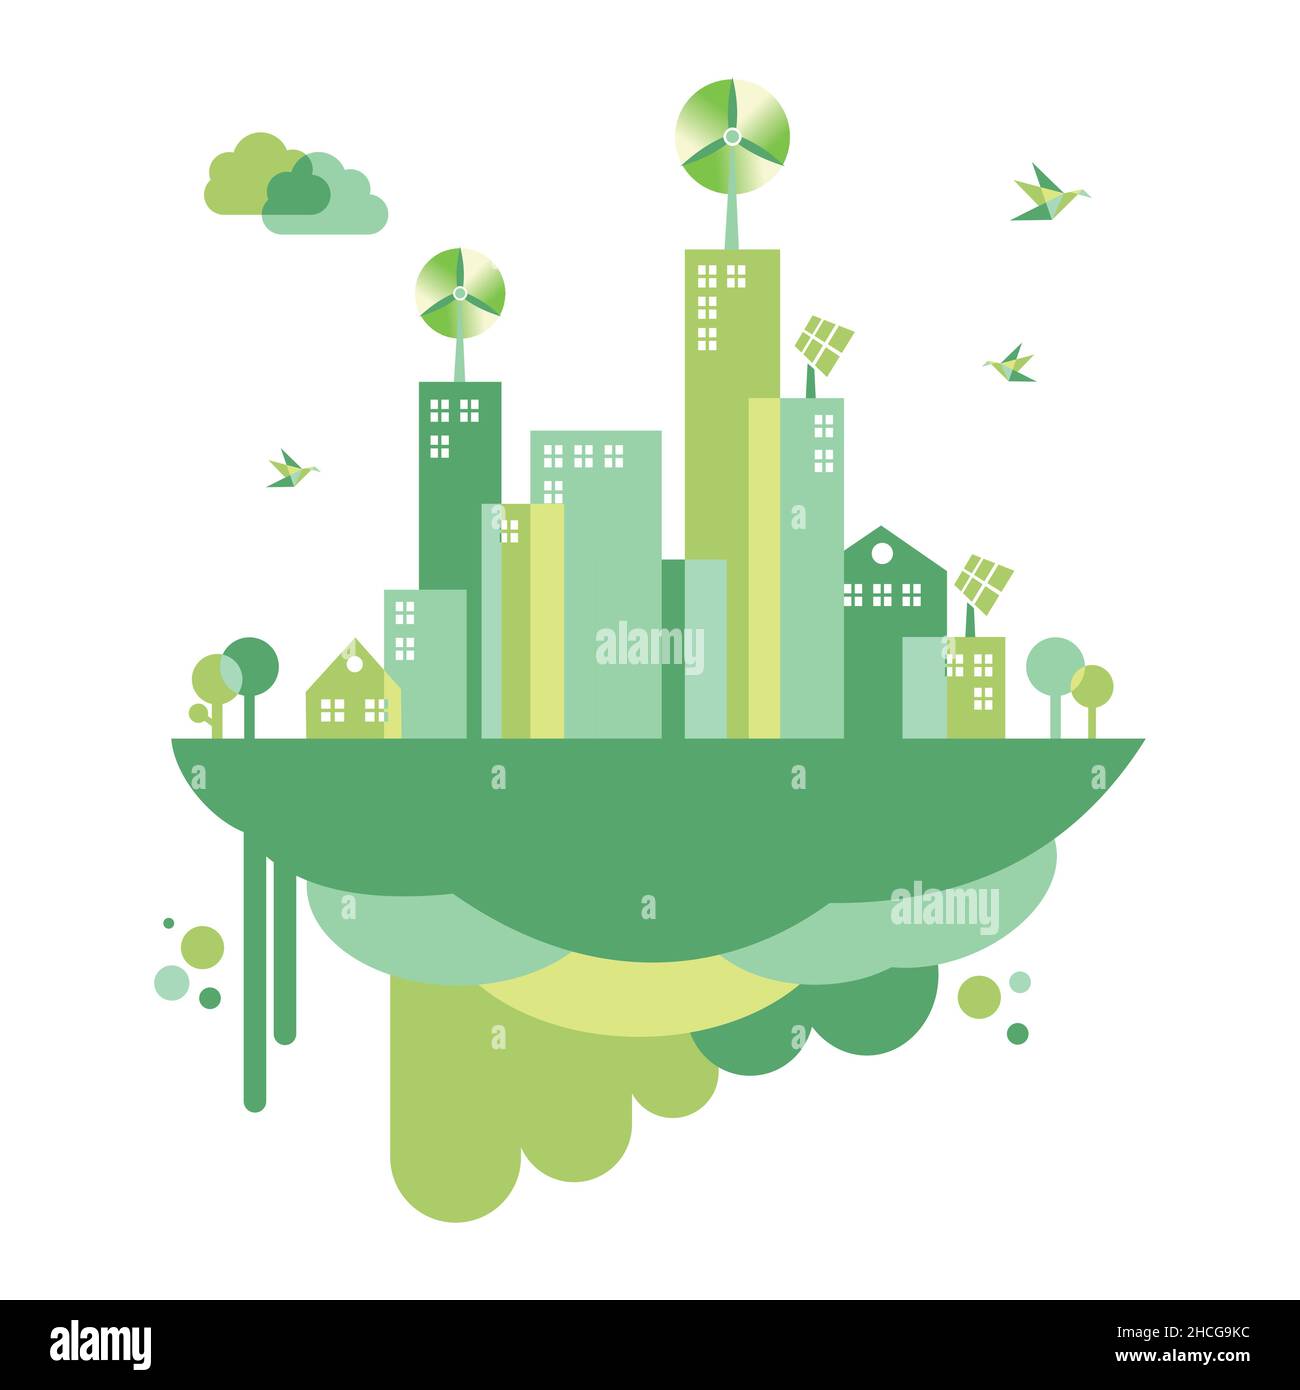 città eco-compatibile con il concetto di "go green". Uso moderno dell'energia naturale per preservare l'energia e uno stile di vita più sano nel prossimo futuro. Vettore piatto Illustrazione Vettoriale